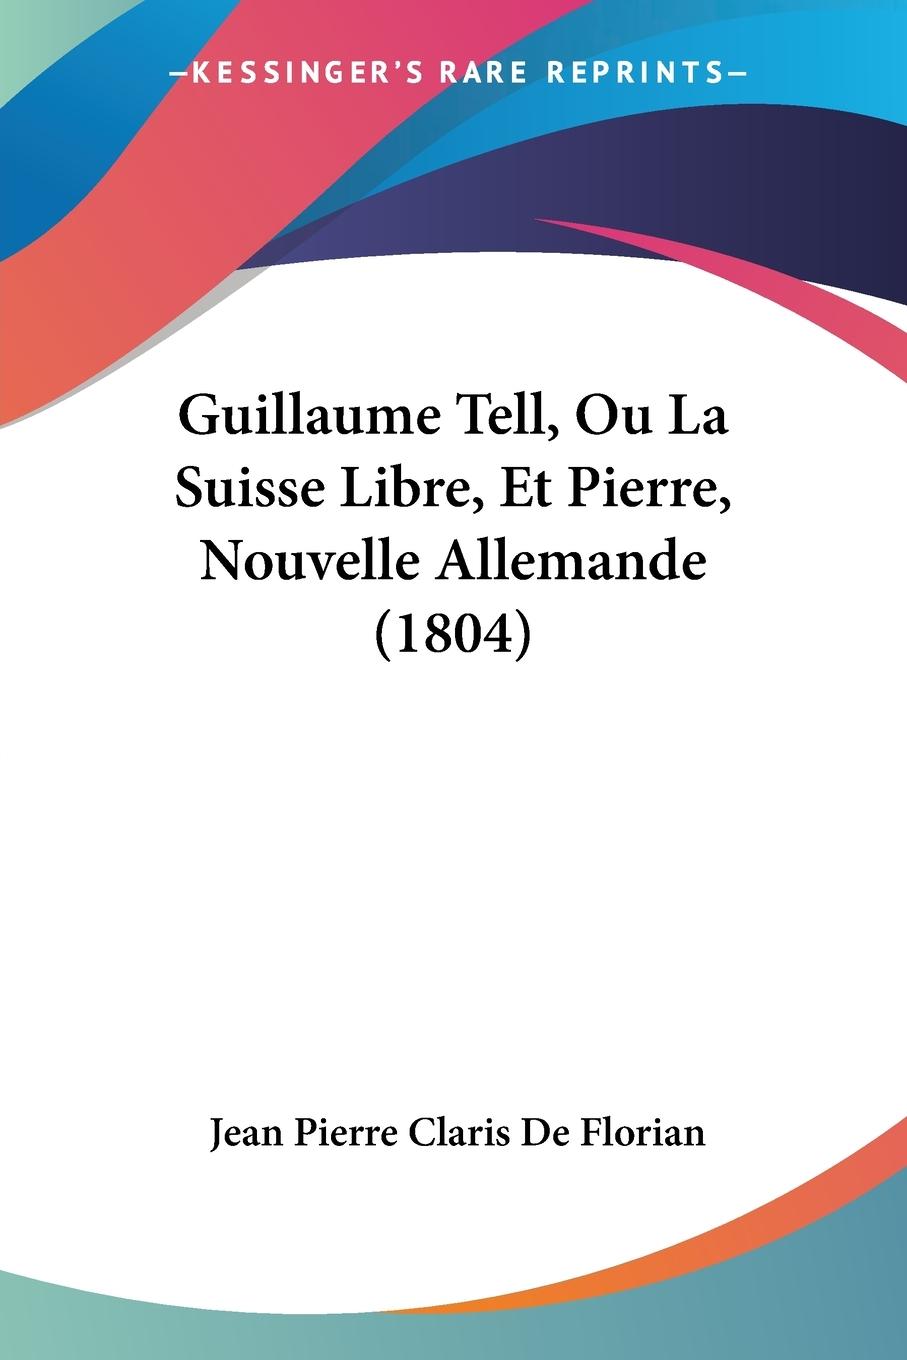 Guillaume Tell, Ou La Suisse Libre, Et Pierre, Nouvelle Allemande (1804) - De Florian, Jean Pierre Claris